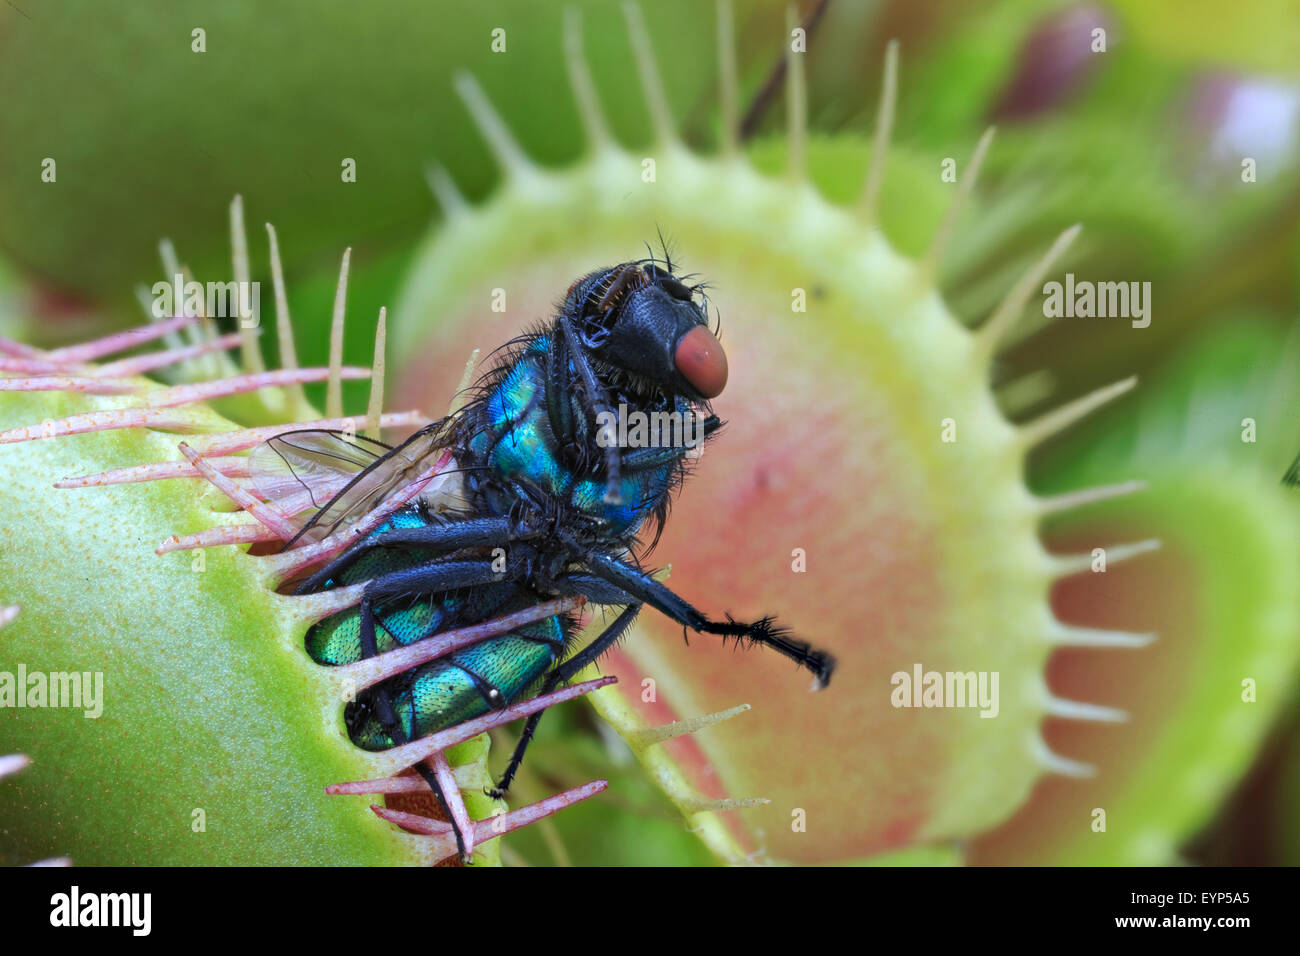 Greenbottle fly pris dans un Venus flytrap Banque D'Images